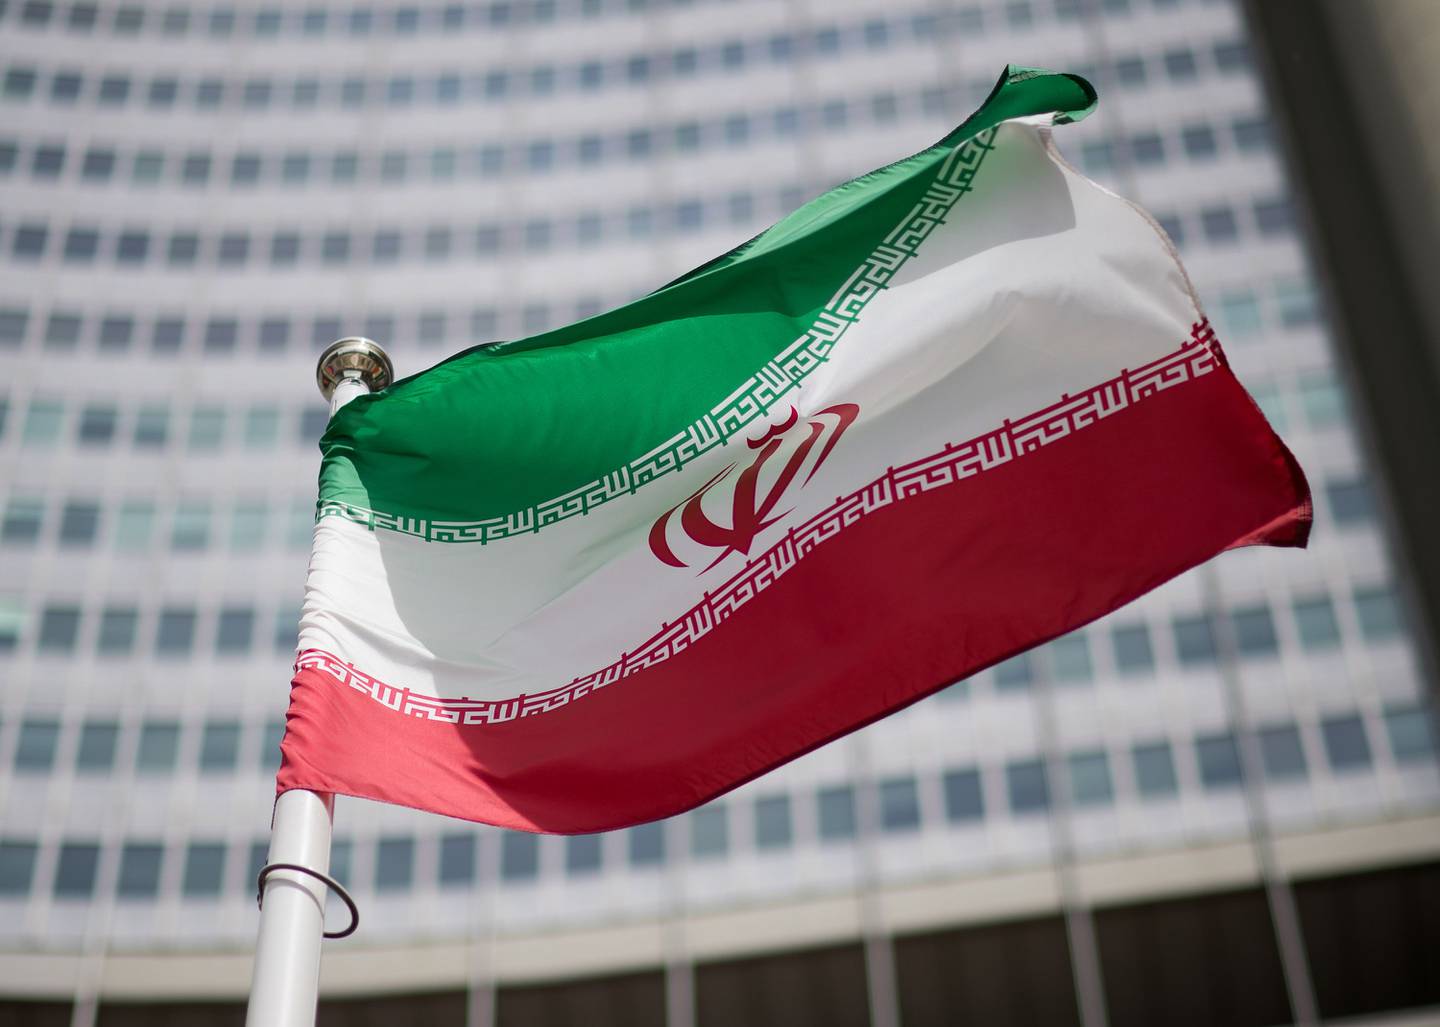 Imagen de la bandera de Irán